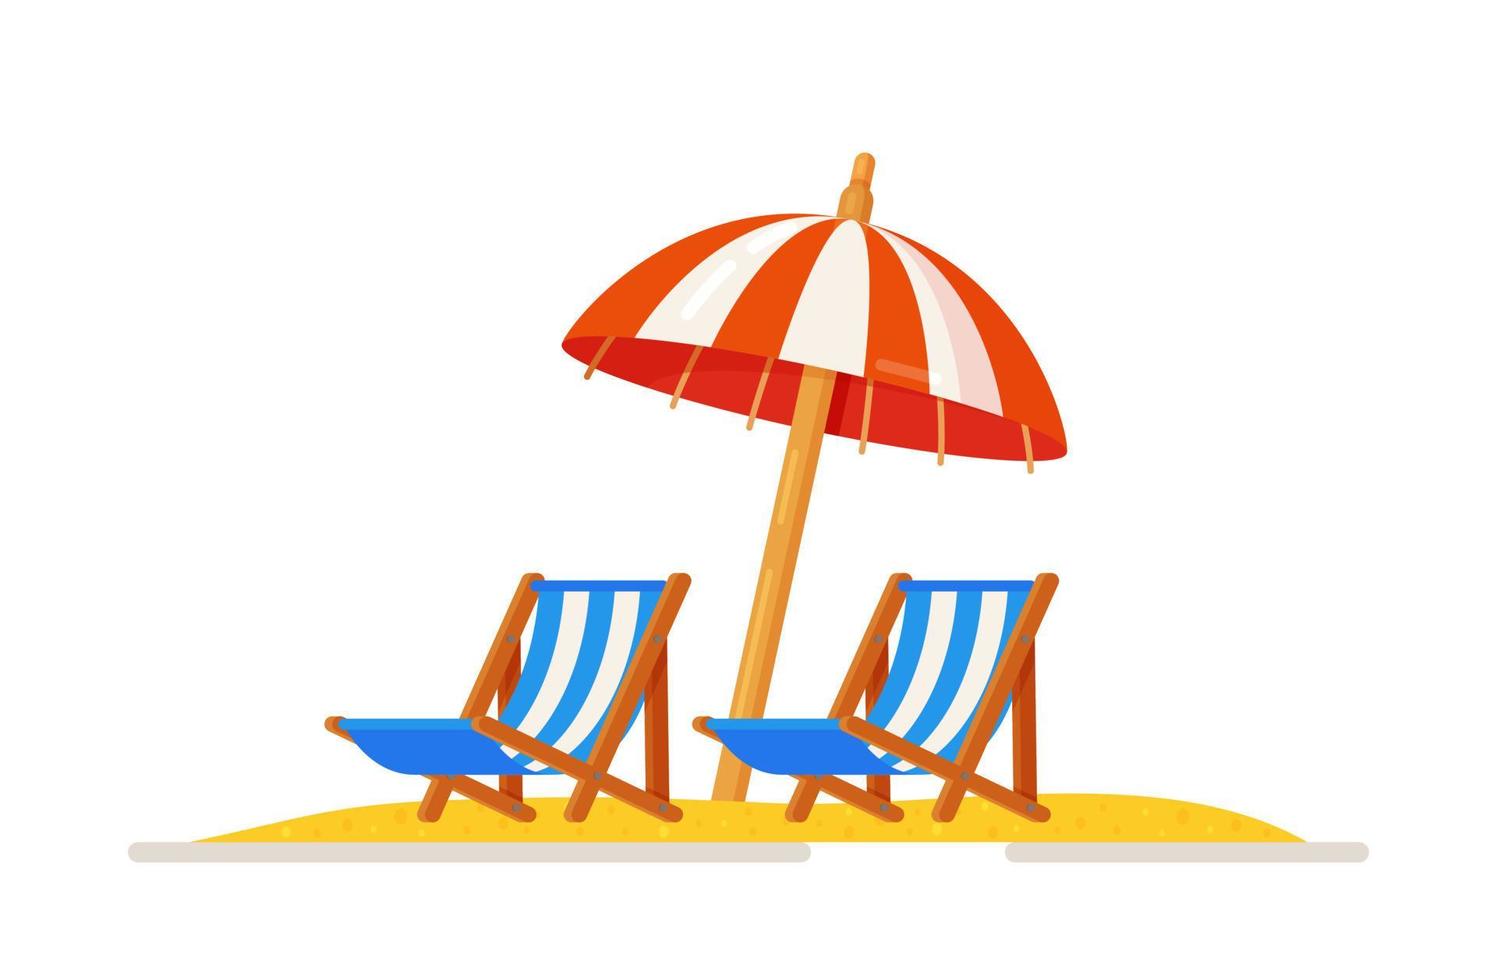 ilustração em vetor de uma poltrona reclinável na areia sob um guarda-chuva. conceito de recreação e viagens.